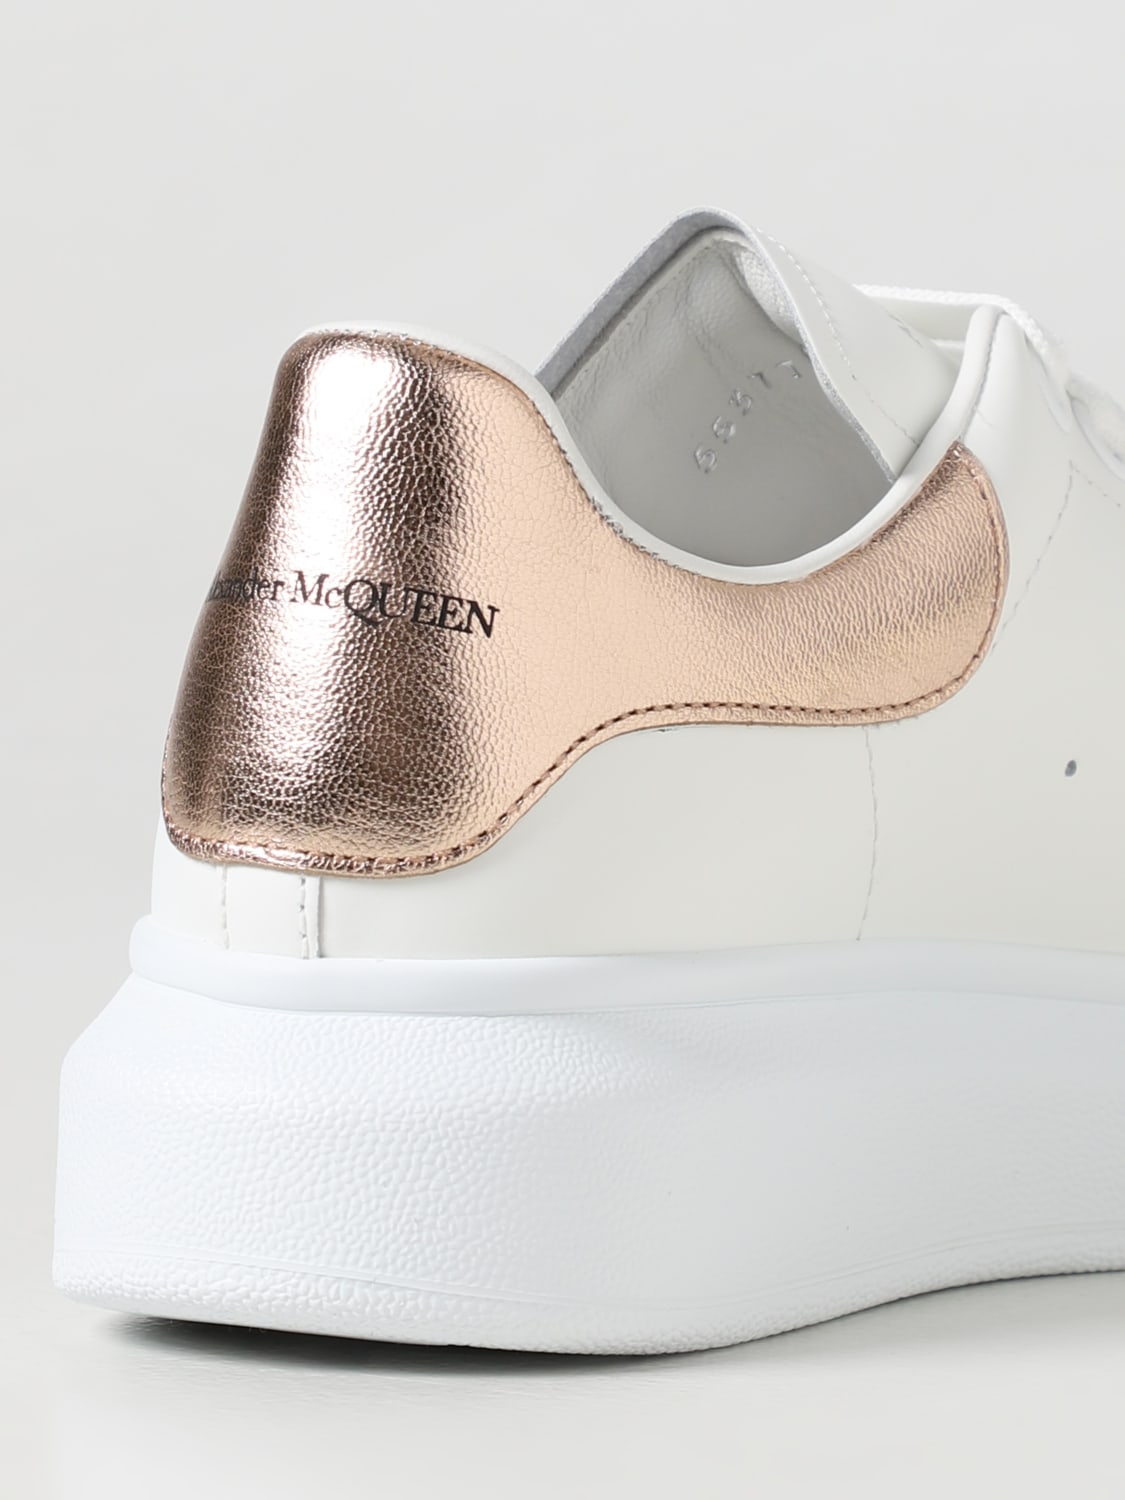 Alexander Mcqueen sneakers for Women